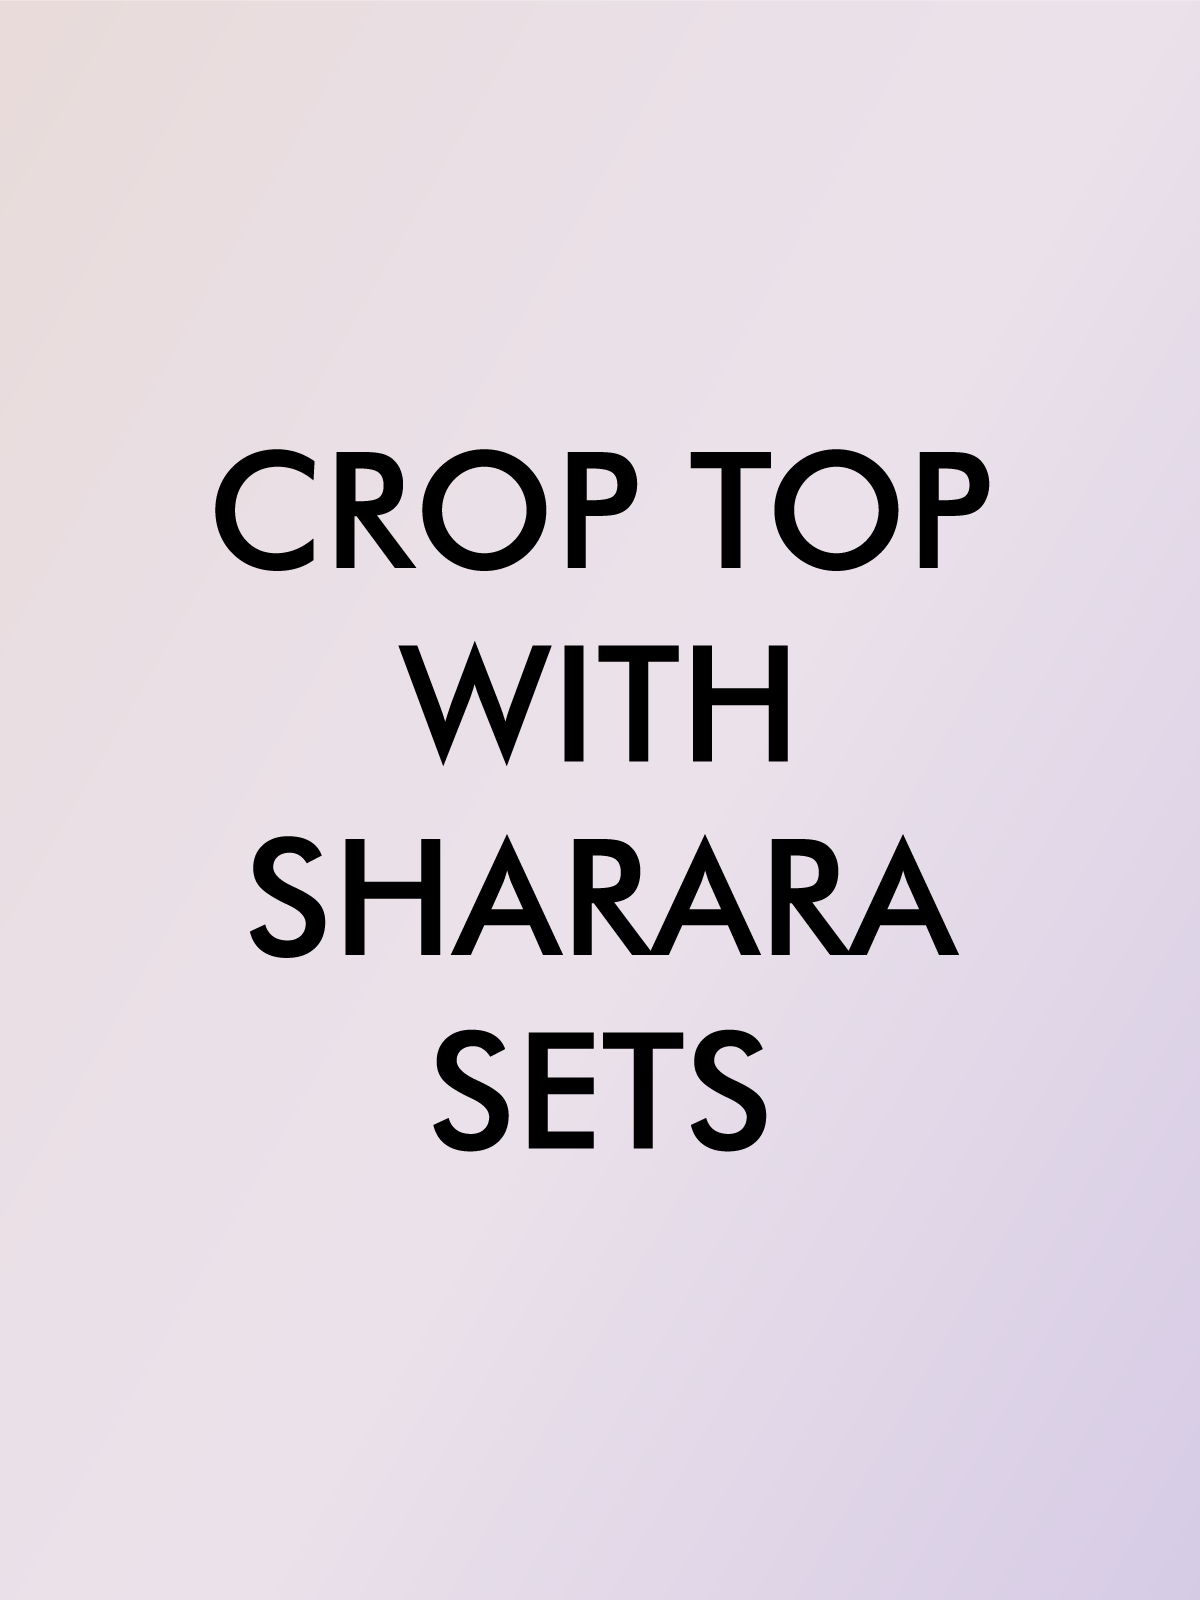 CROP TOP WITH SHARARA SETS